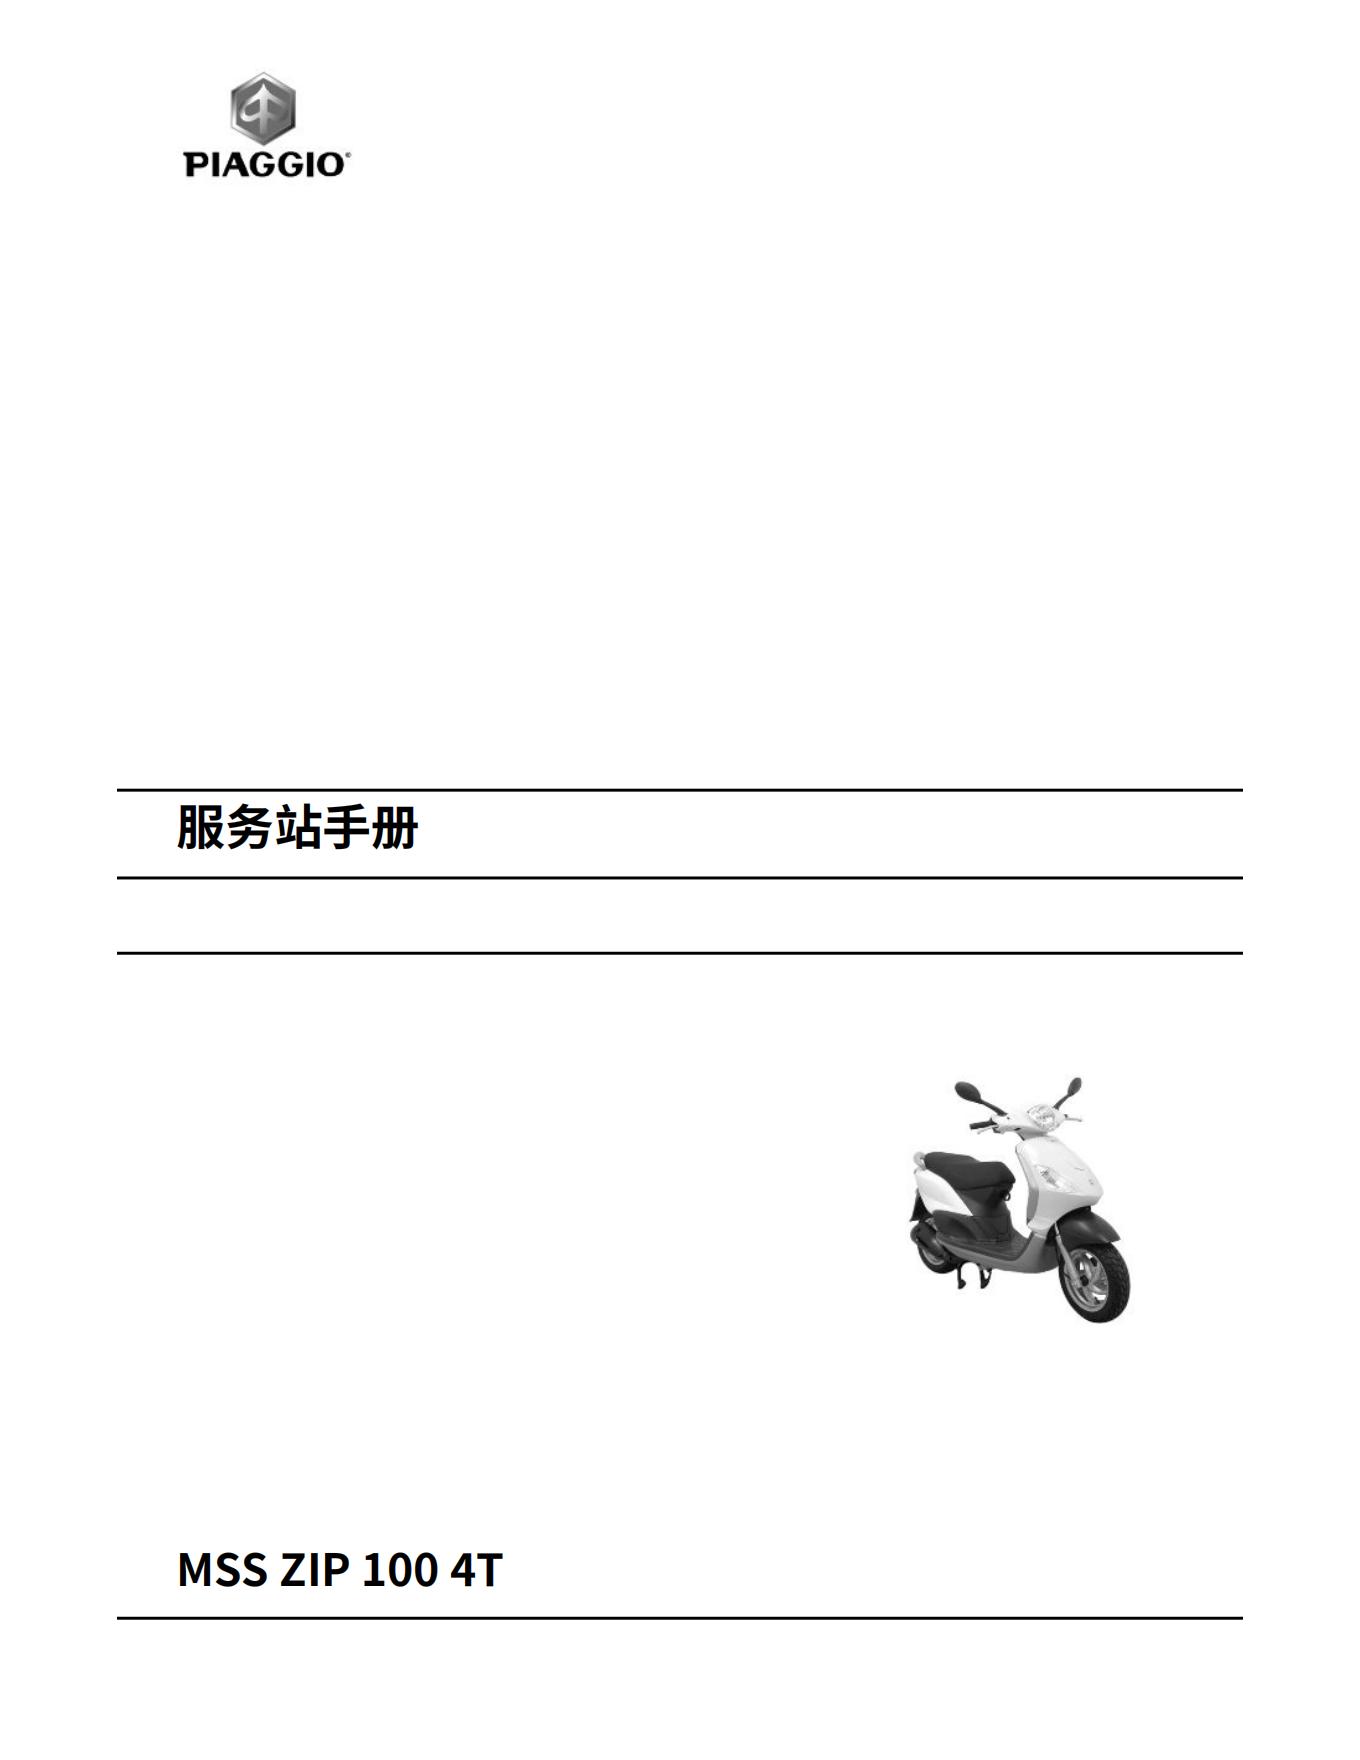 简体中文2007年比亚乔FLY125FLY150维修手册插图